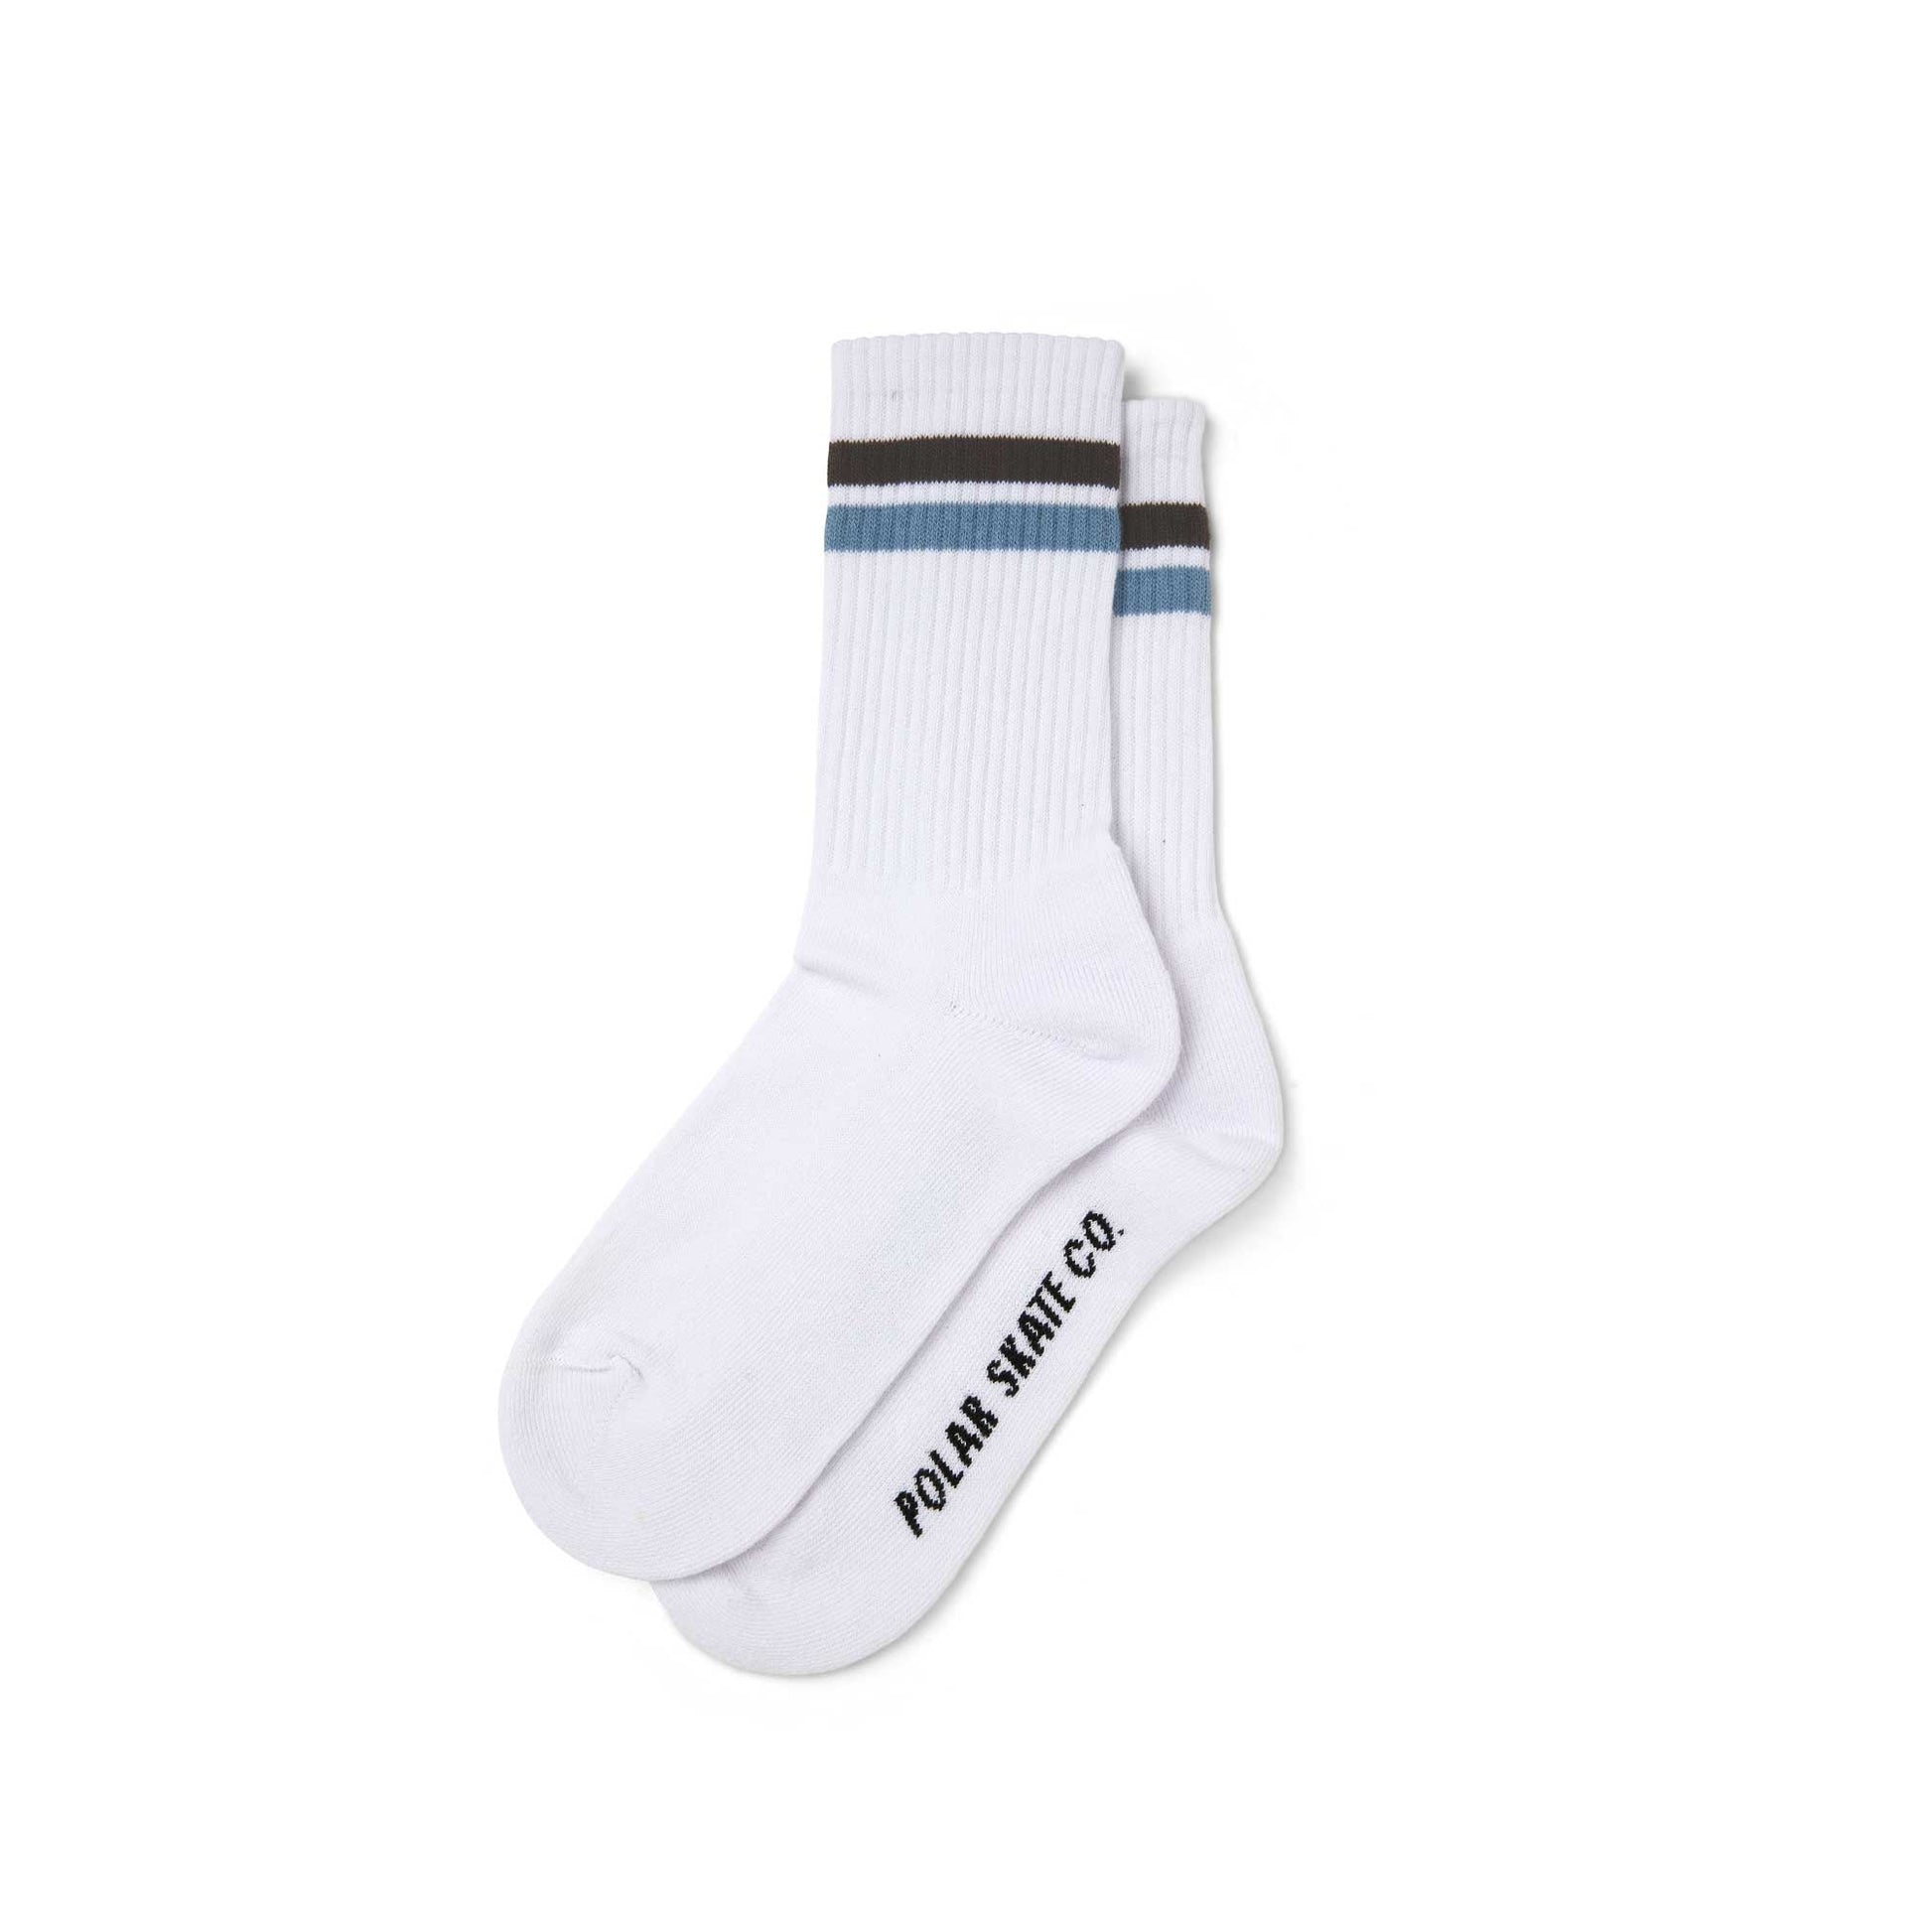 Polar Stripe Socks, White / Brown / Blue - Tiki Room Skateboards - 1